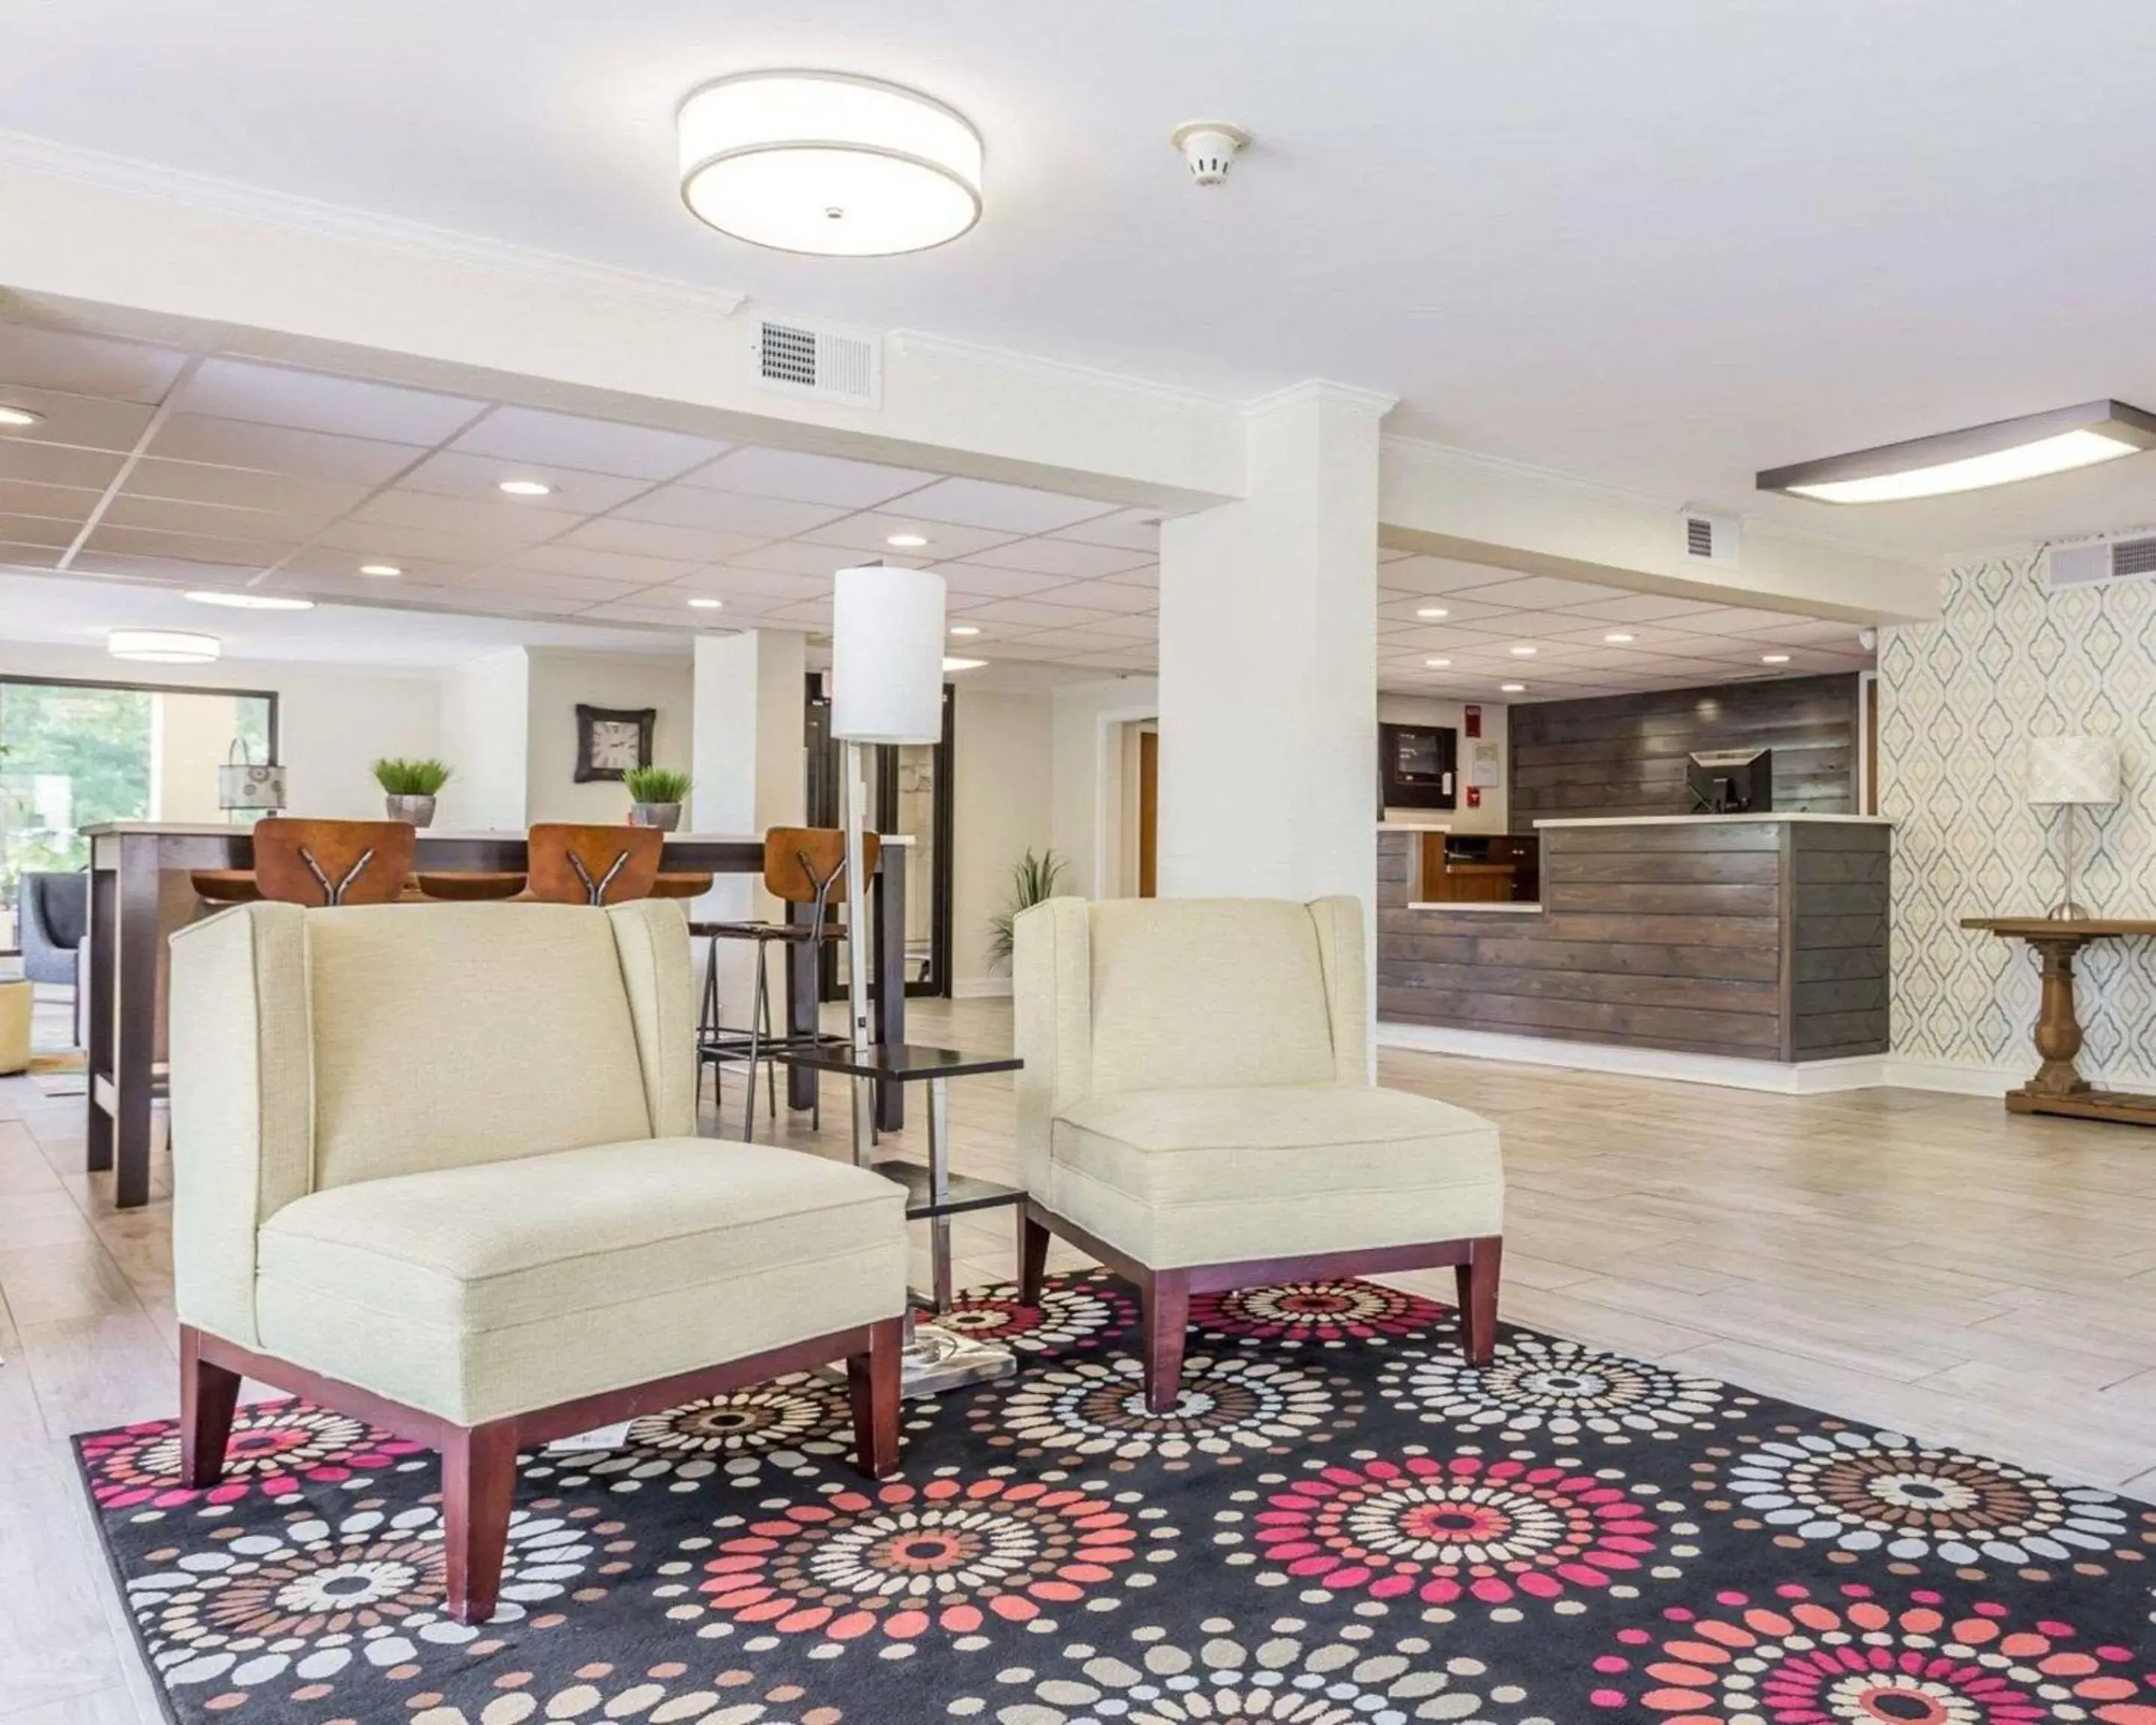 Lobby or reception, Lobby/Reception in Quality Inn Mt. Pleasant – Charleston